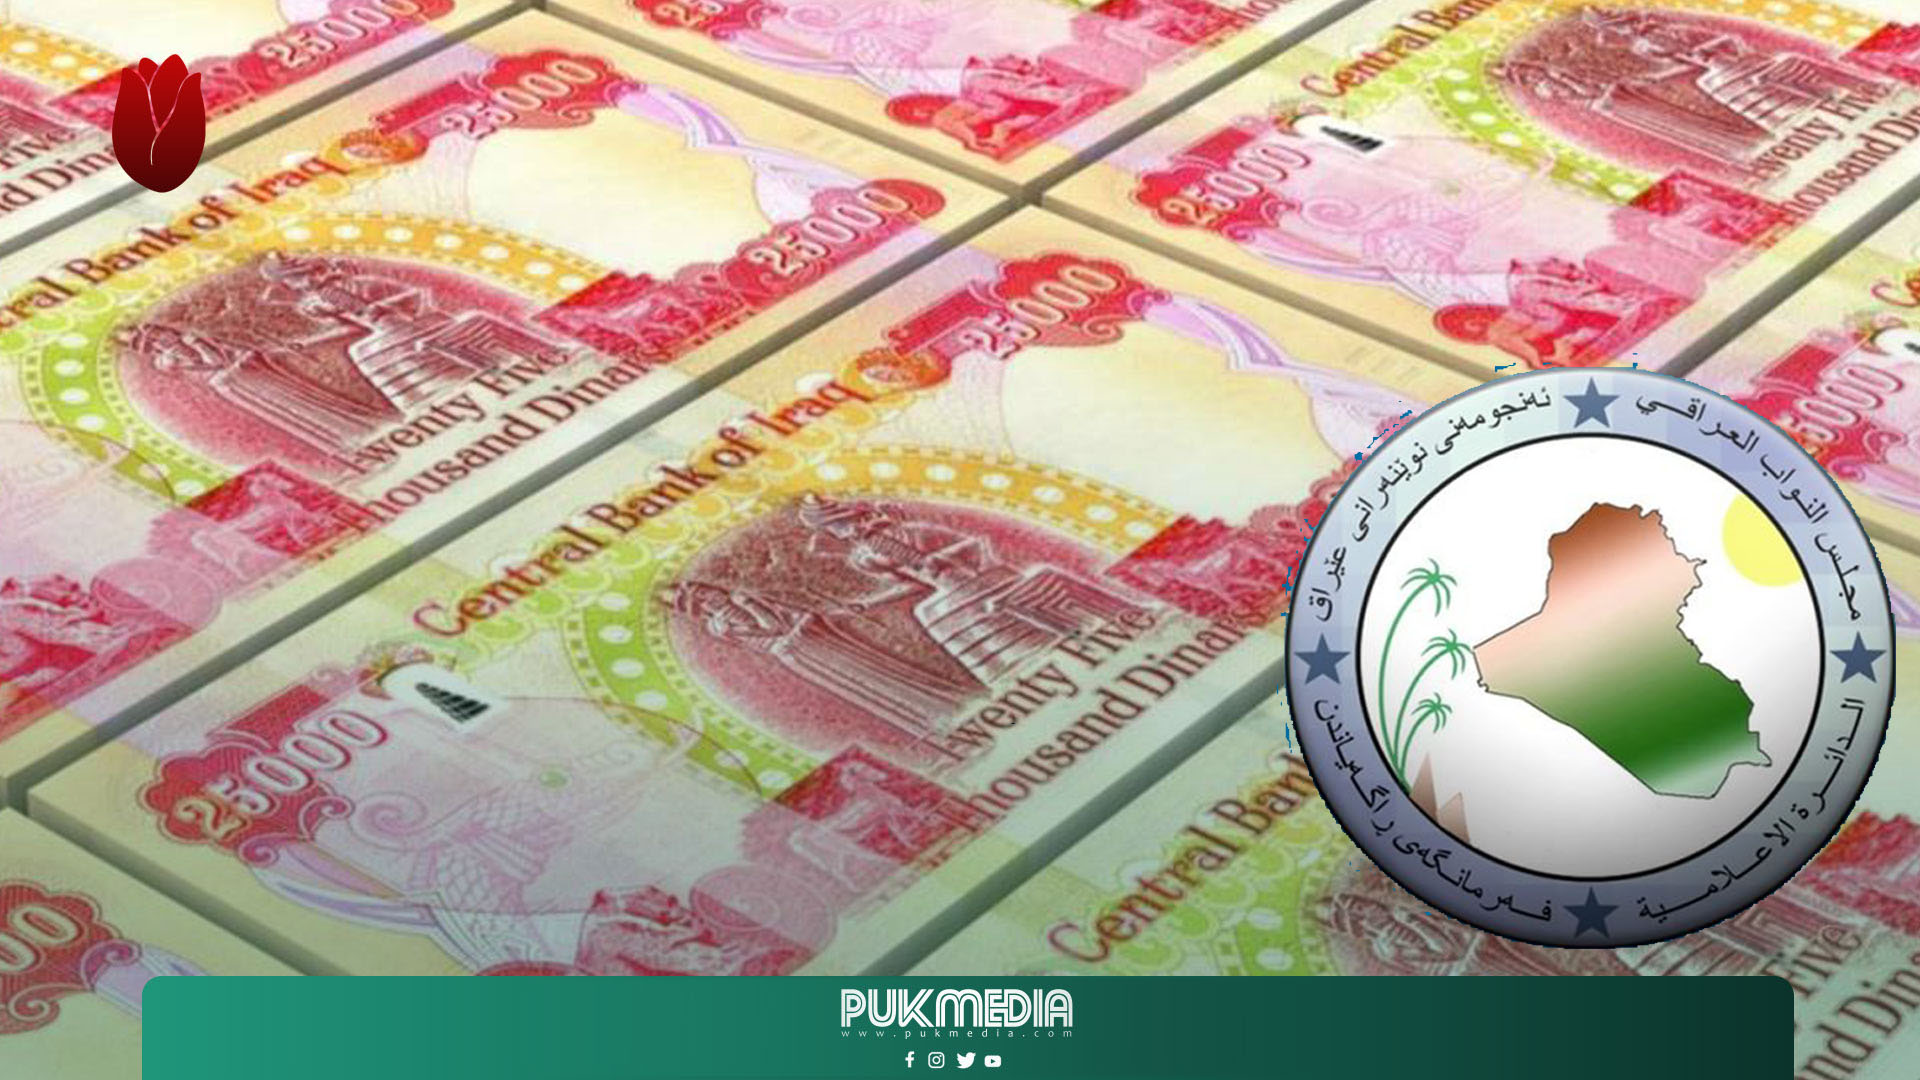 أحدث معلومات حول ارسال حصة اقليم كوردستان من الموازنة الاتحادية